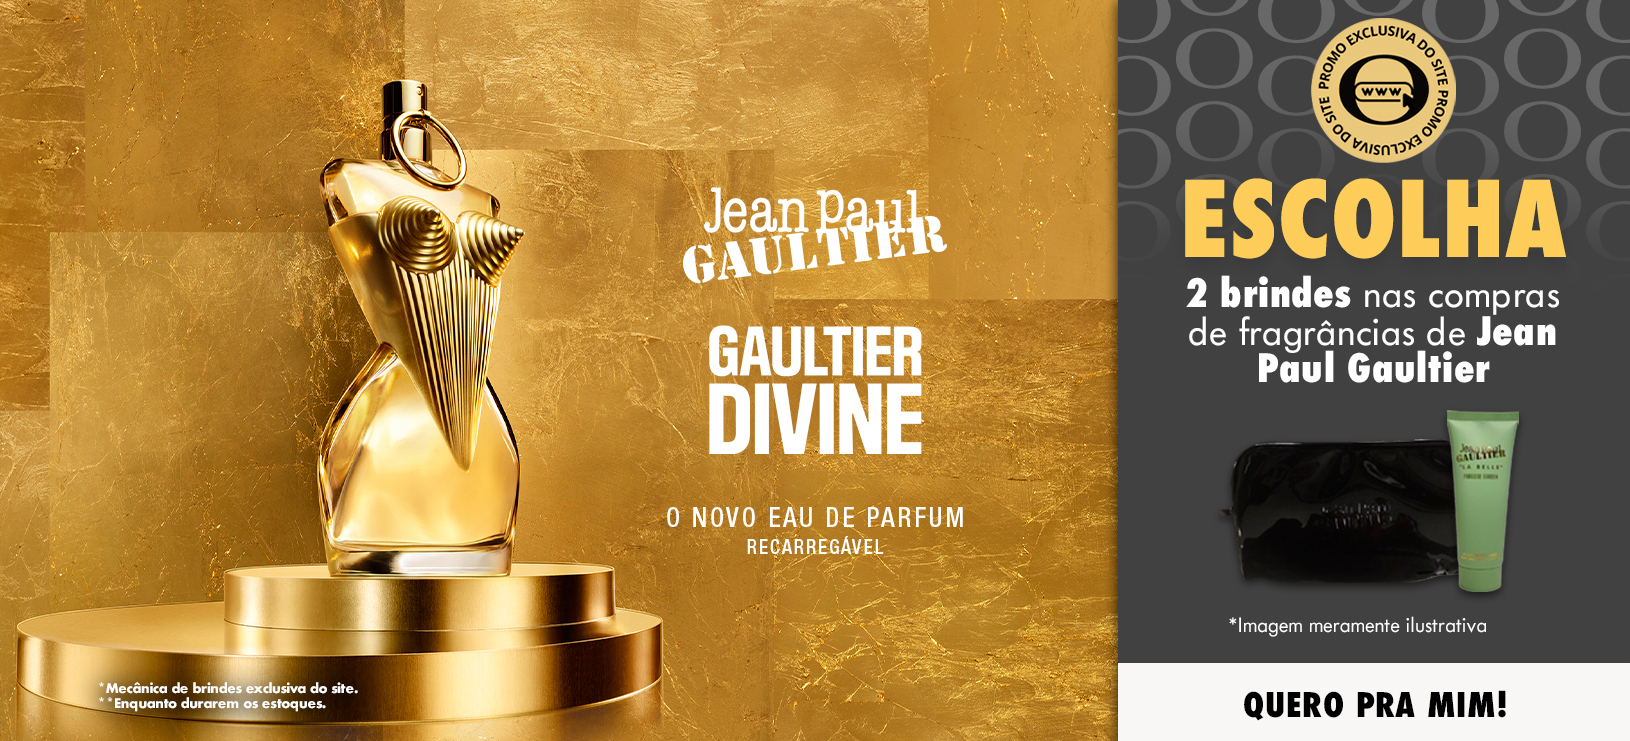 jean-paul-gaultier-divine-banner-desktop